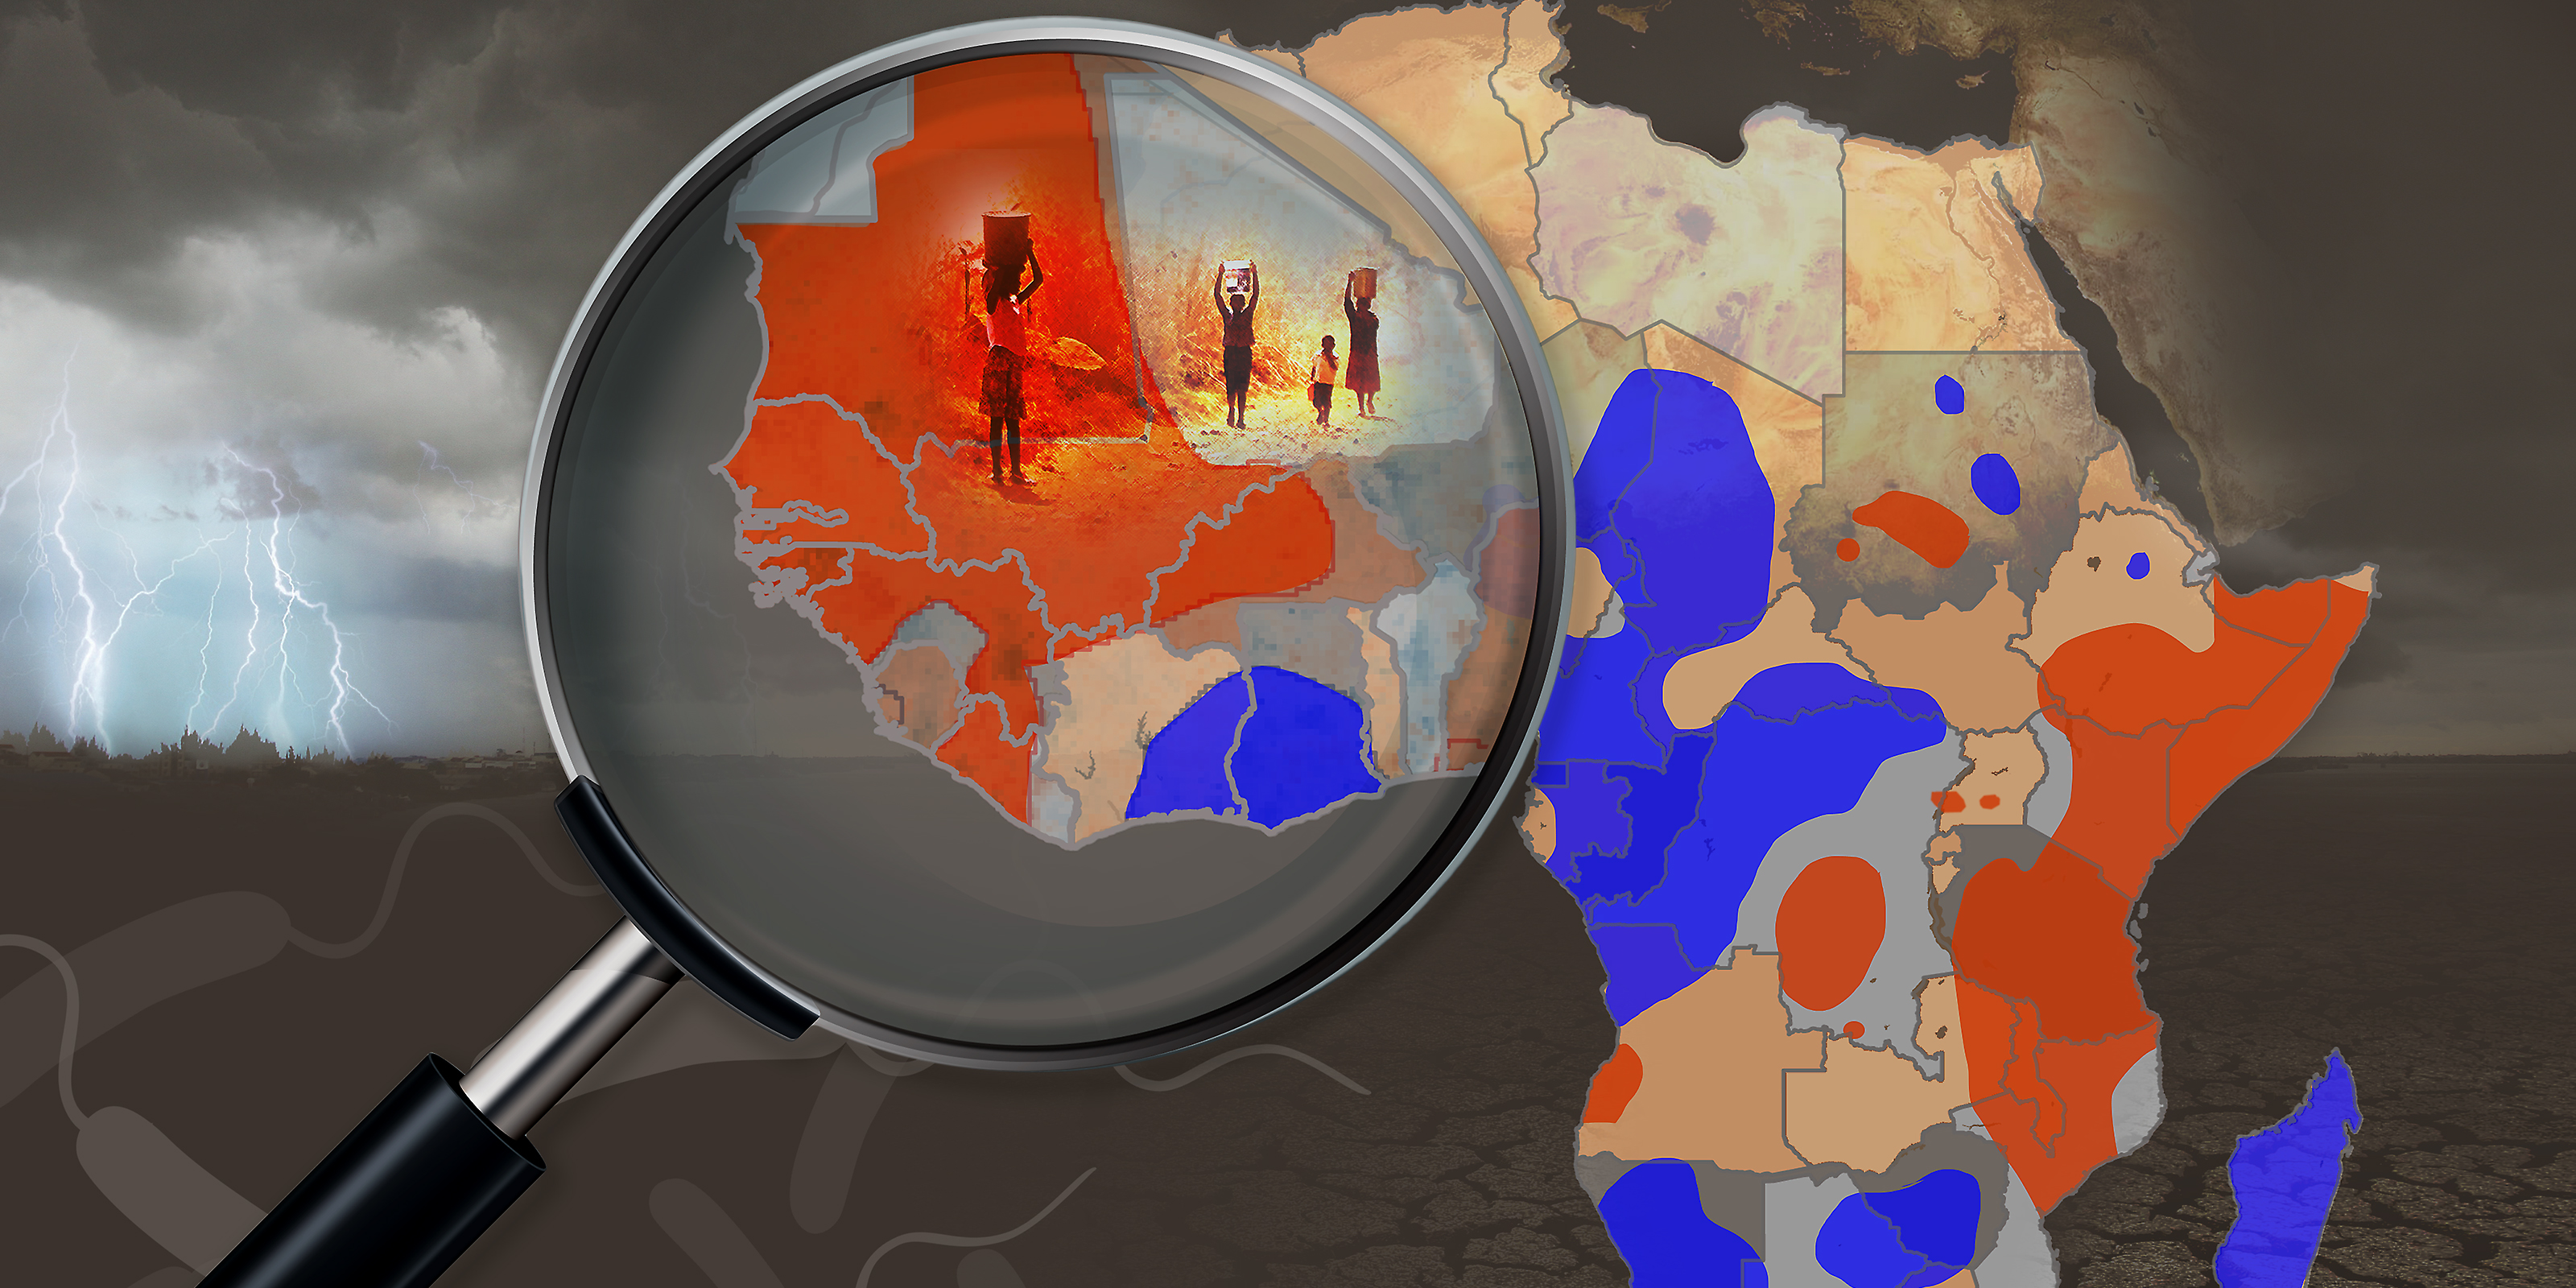 world map showing cholera hotspots